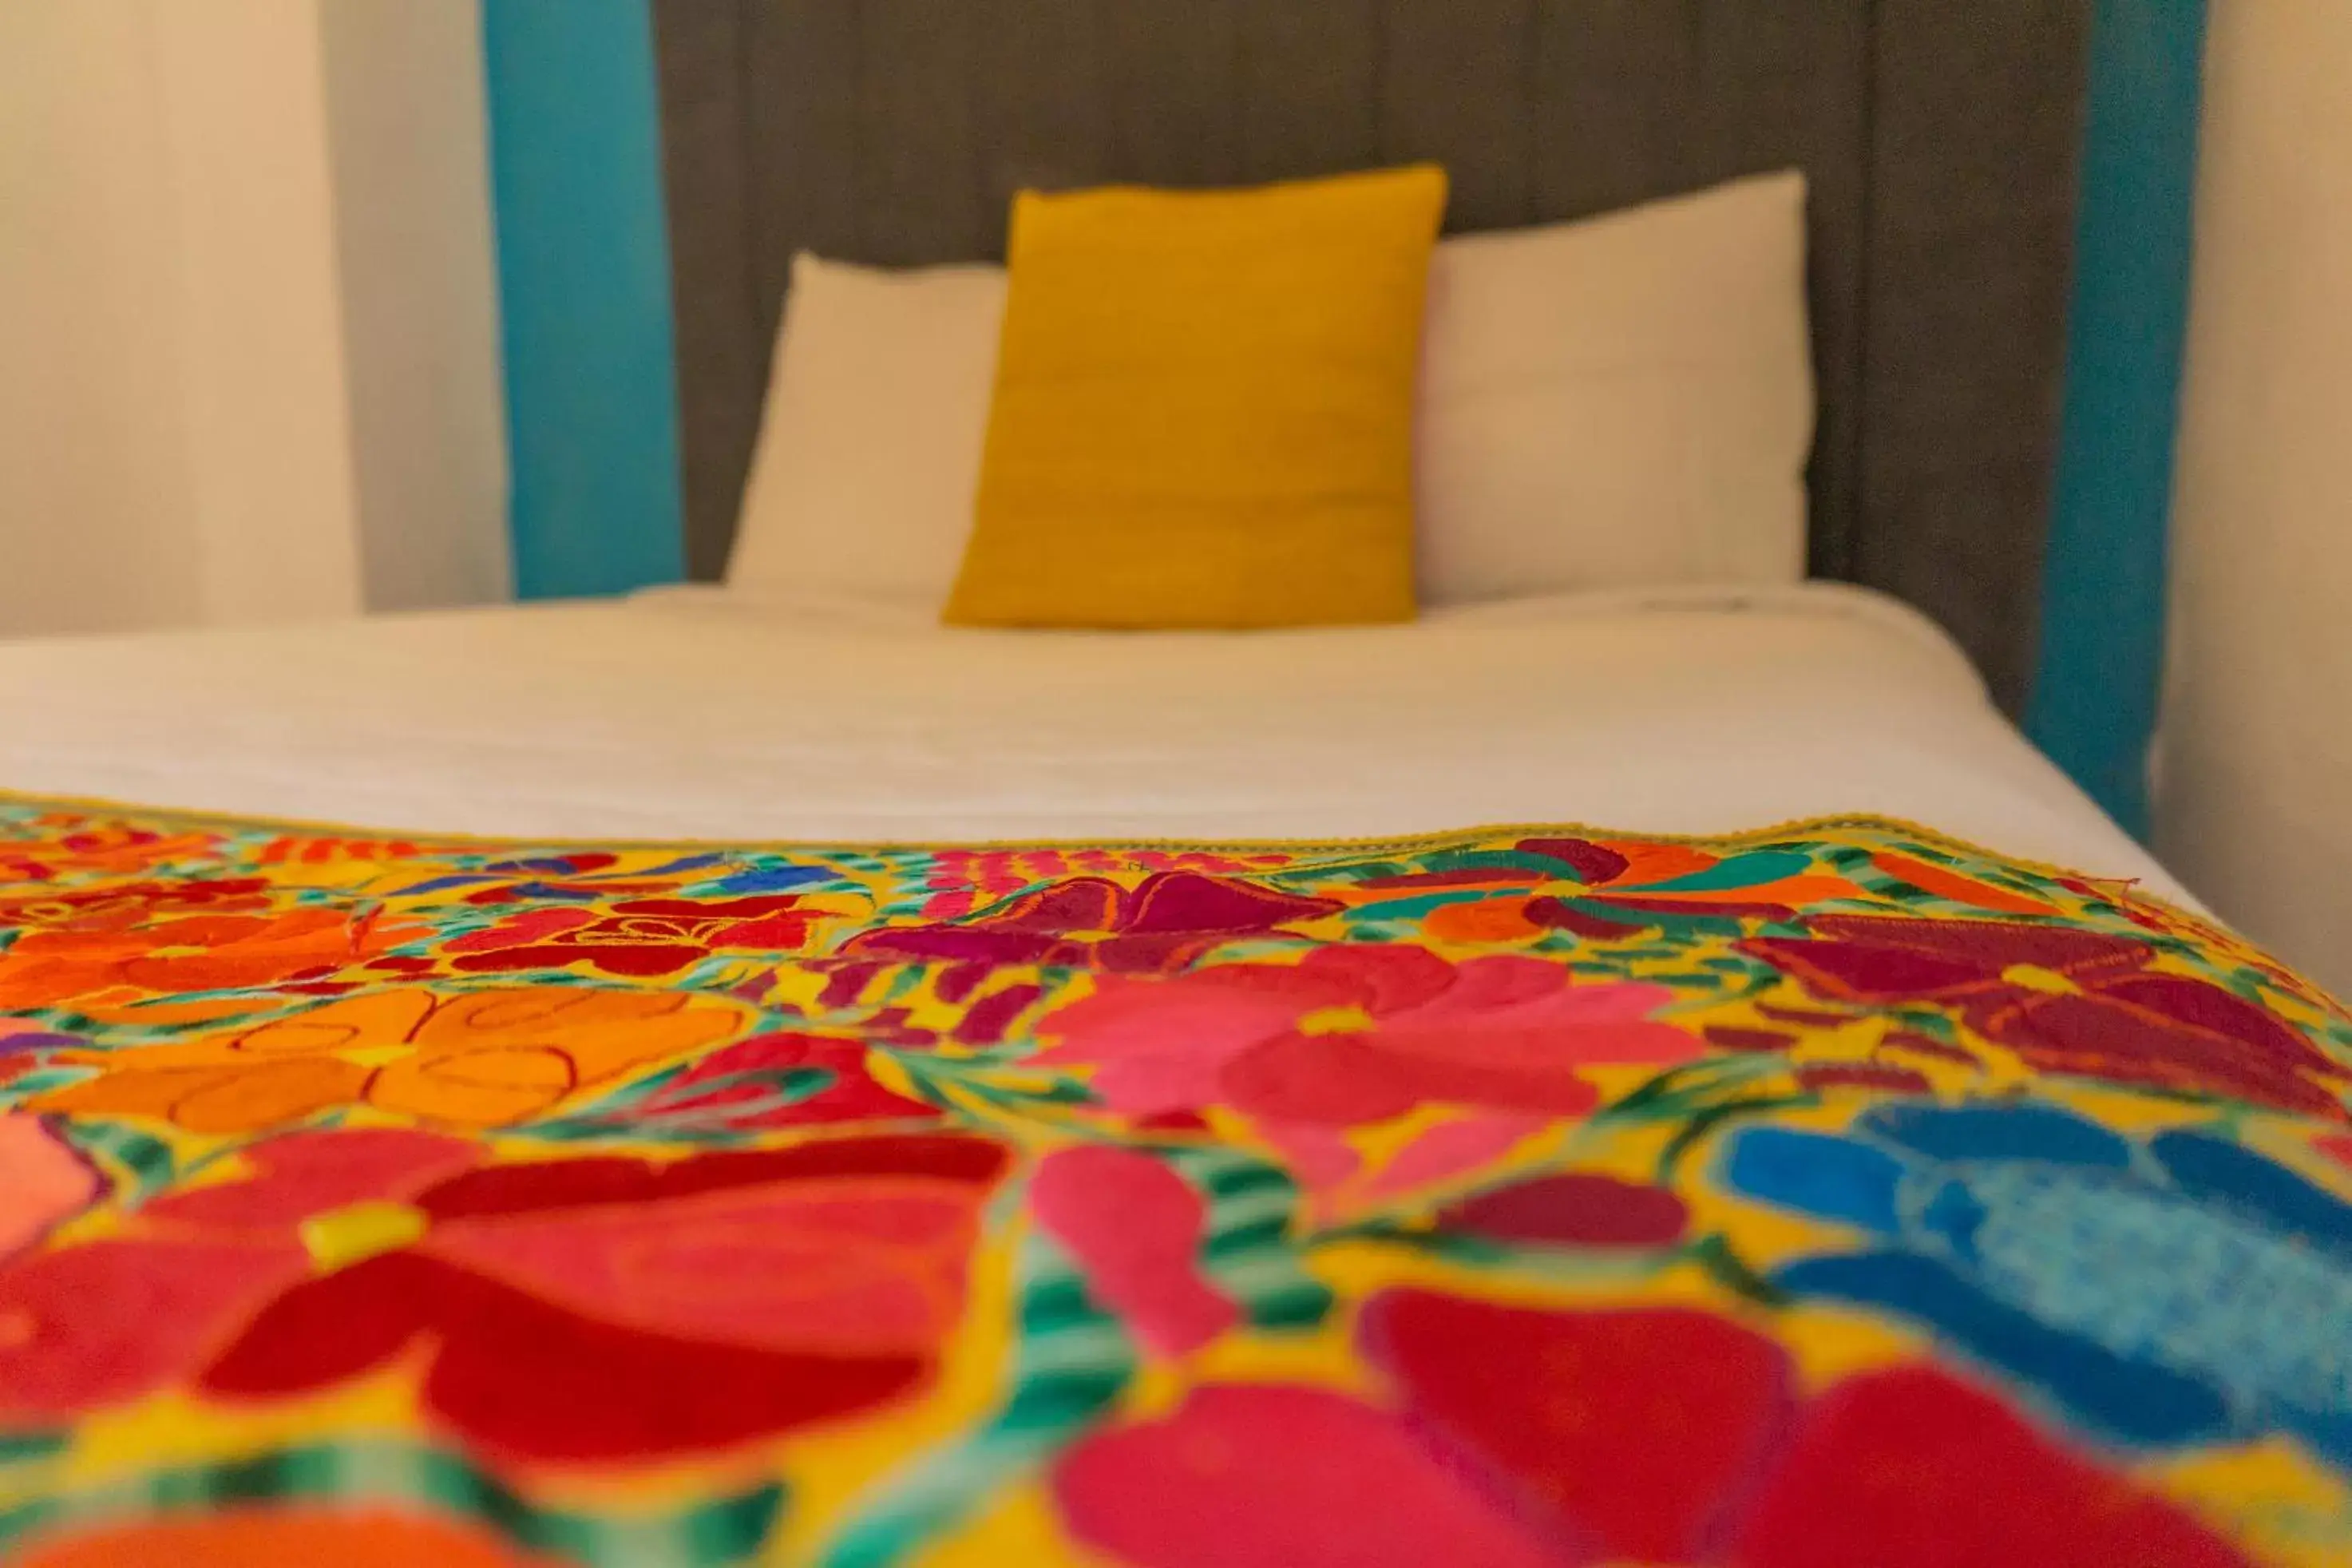 Bed in Hotel Casa del Sol